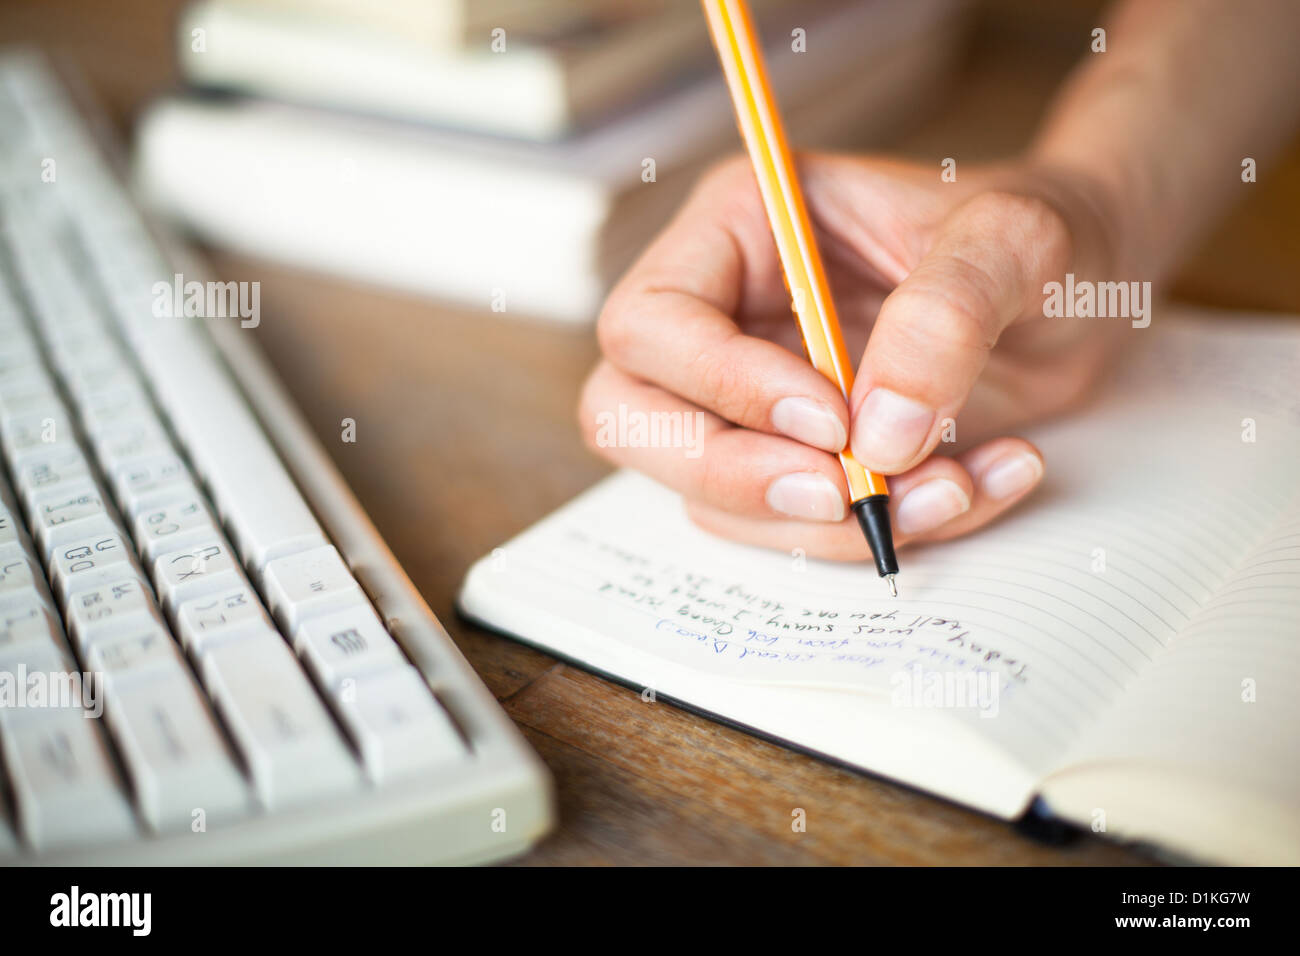 Foto von Händen schreibt einen Stift in einem Notebook, Computer-Tastatur und einen Stapel Bücher im Hintergrund Stockfoto